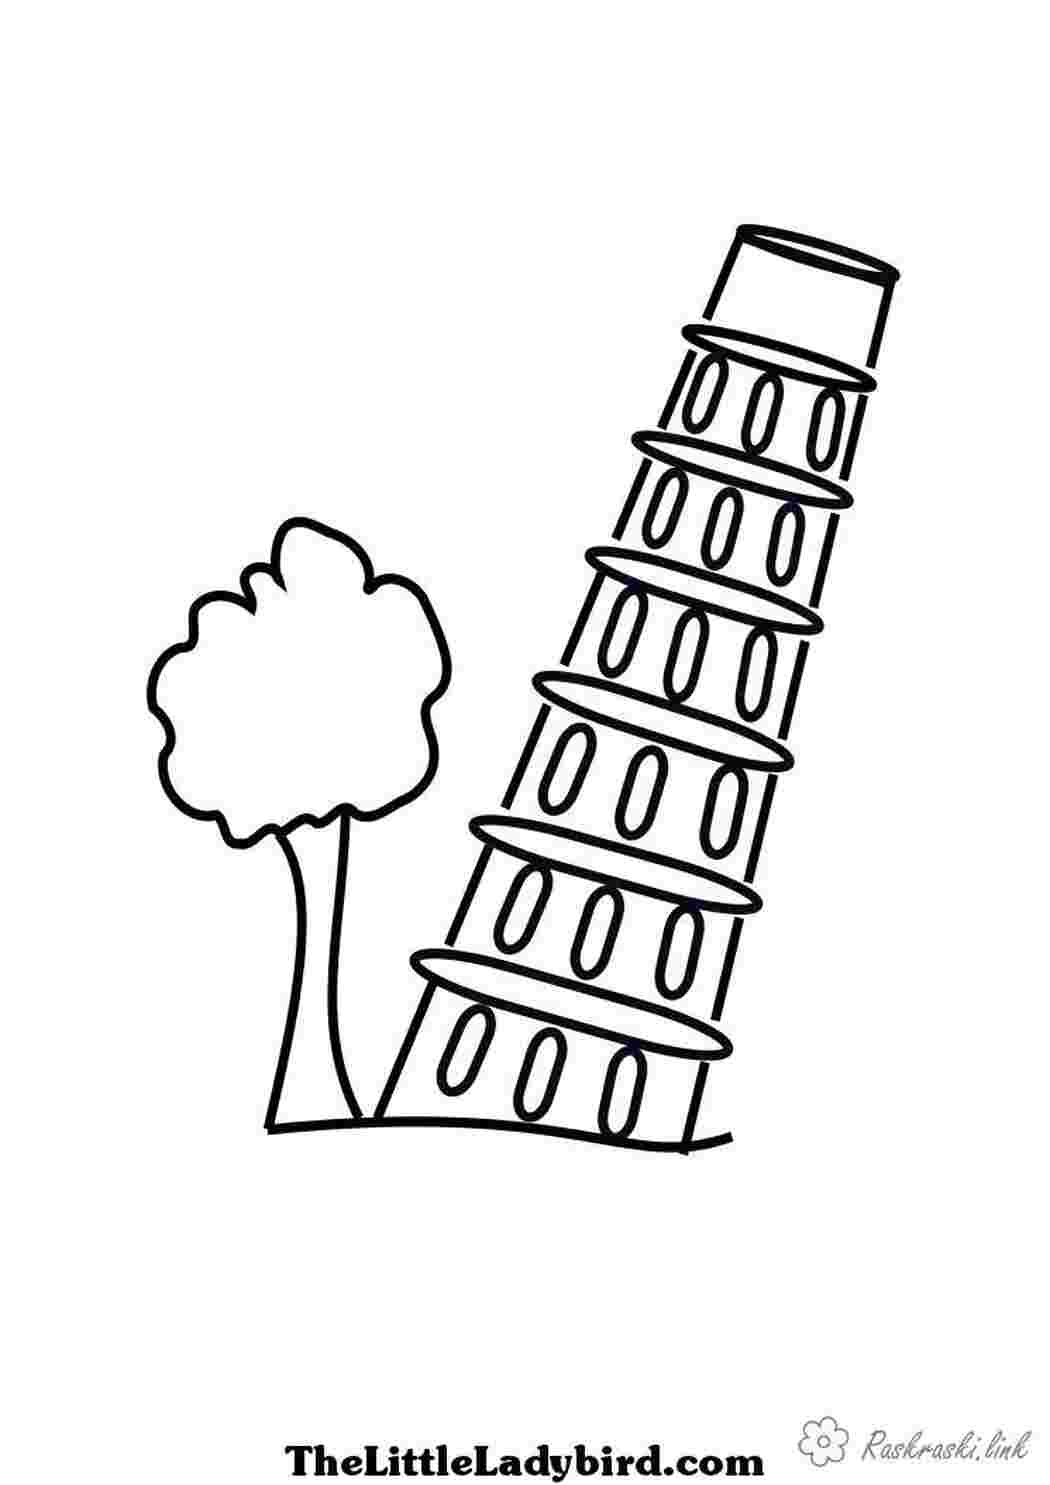 Пизанская башня раскраска для детей